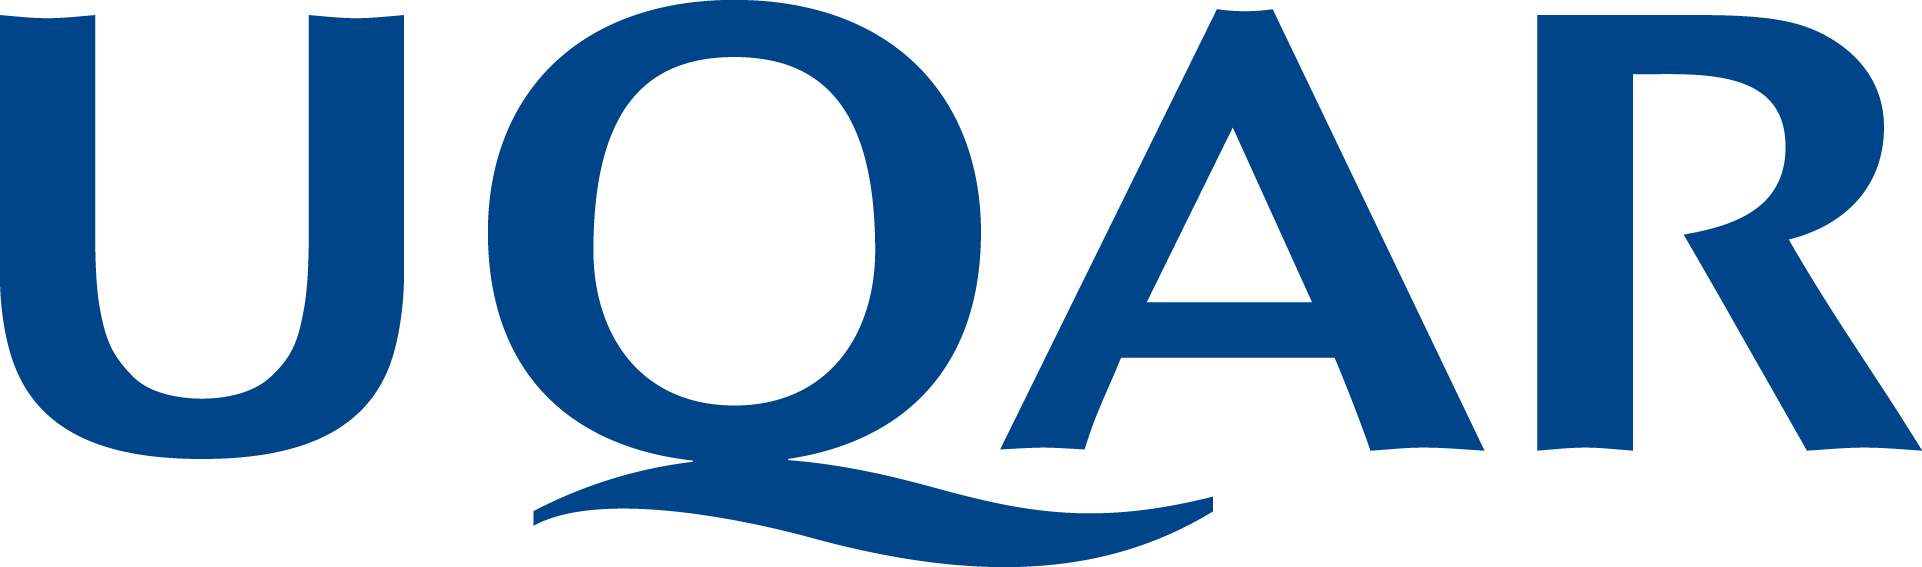 Logo de l'UQAR